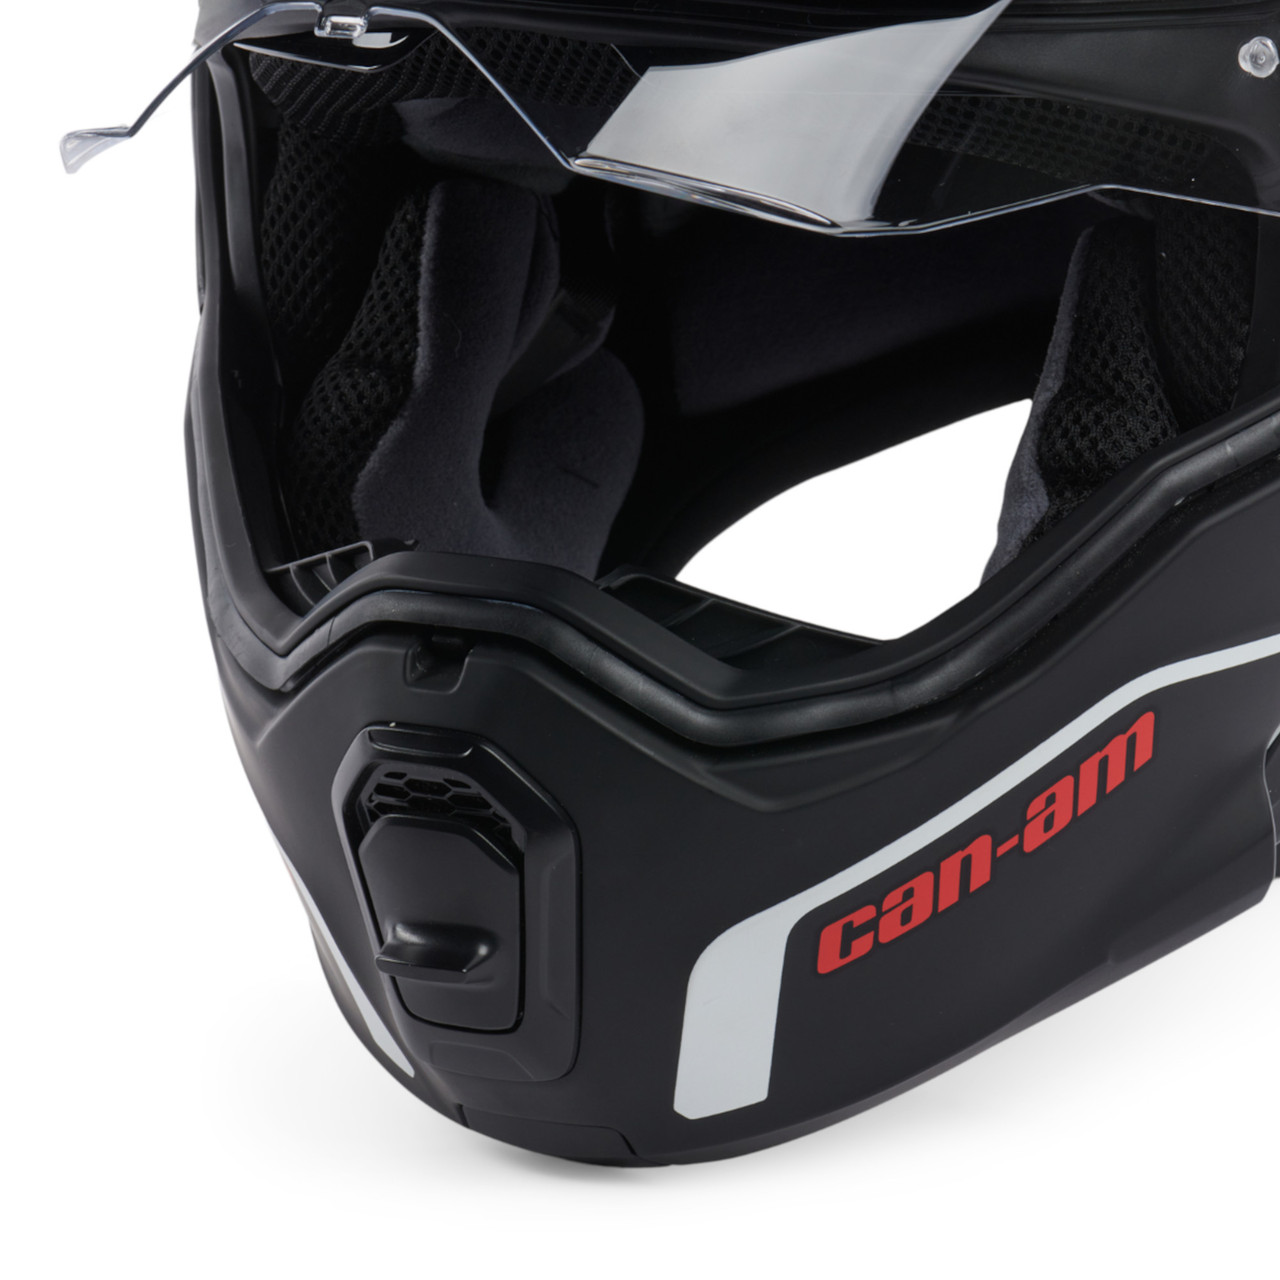 Can-Am New OEM XS Anti-Scratch Exome Modular Helmet (DOT/ECE), 9290400201